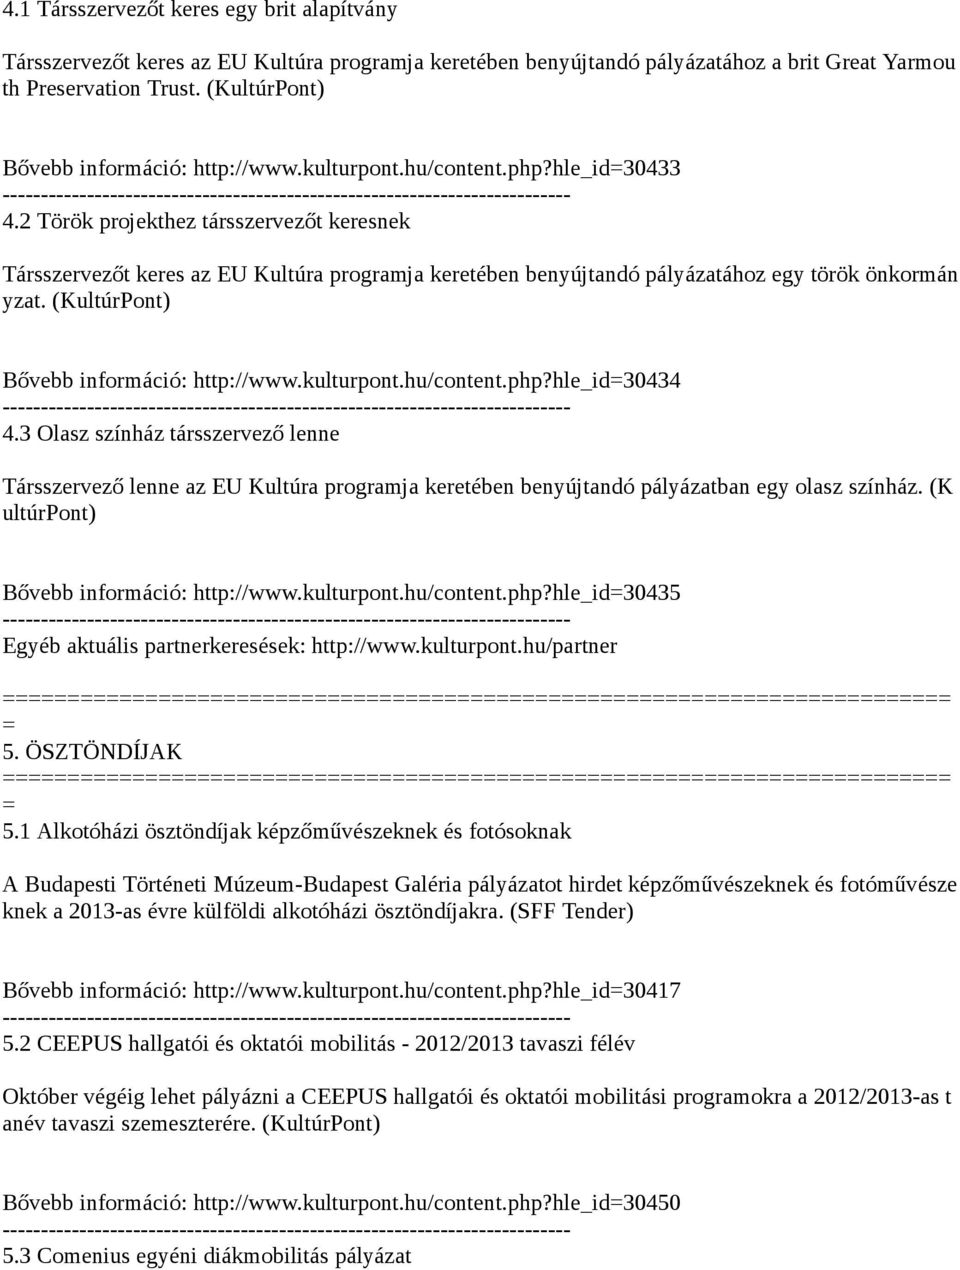 2 Török projekthez társszervezőt keresnek Társszervezőt keres az EU Kultúra programja keretében benyújtandó pályázatához egy török önkormán yzat. (KultúrPont) Bővebb információ: http://www.kulturpont.